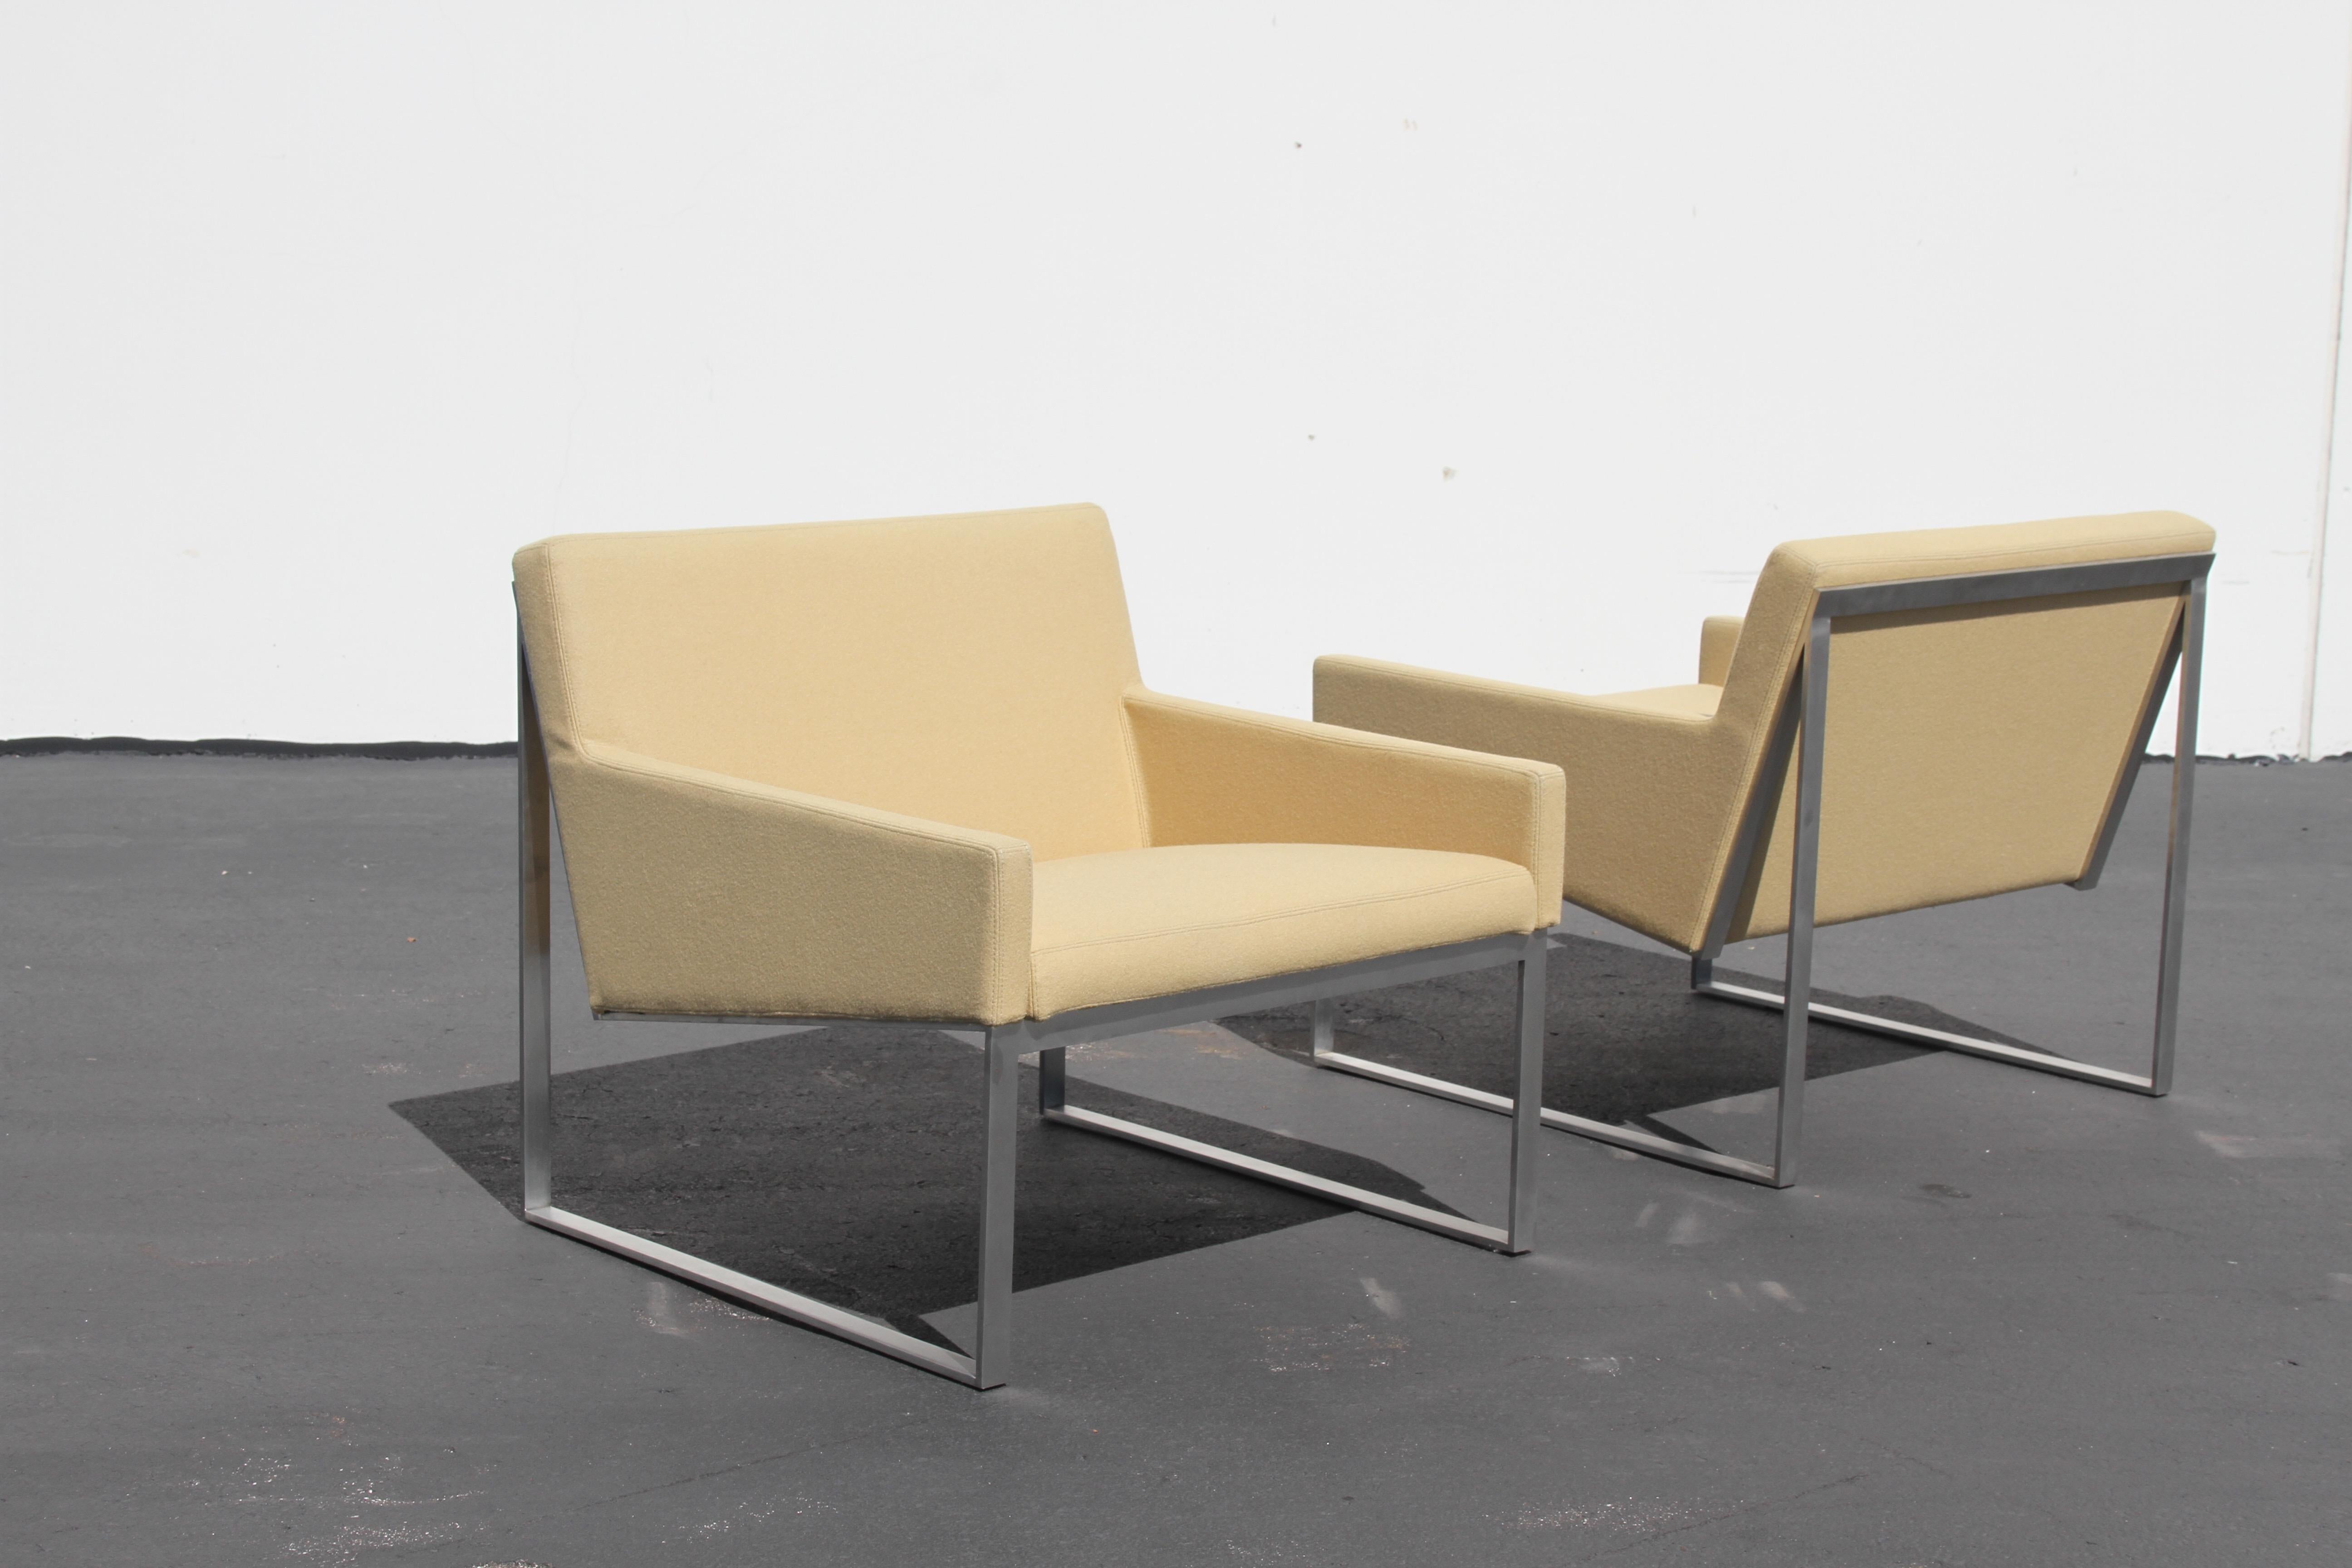 Der in Paris geborene Fabien Baron entwarf b.3 Lounge Chairs für Bernhardt Design. Gestell aus gebürstetem Nickel, Polsterung aus wolleähnlicher Mischfaser. Schonend gebraucht, Produktion 2015. Einfachheit in seiner besten Form, sehr gut gebaut und